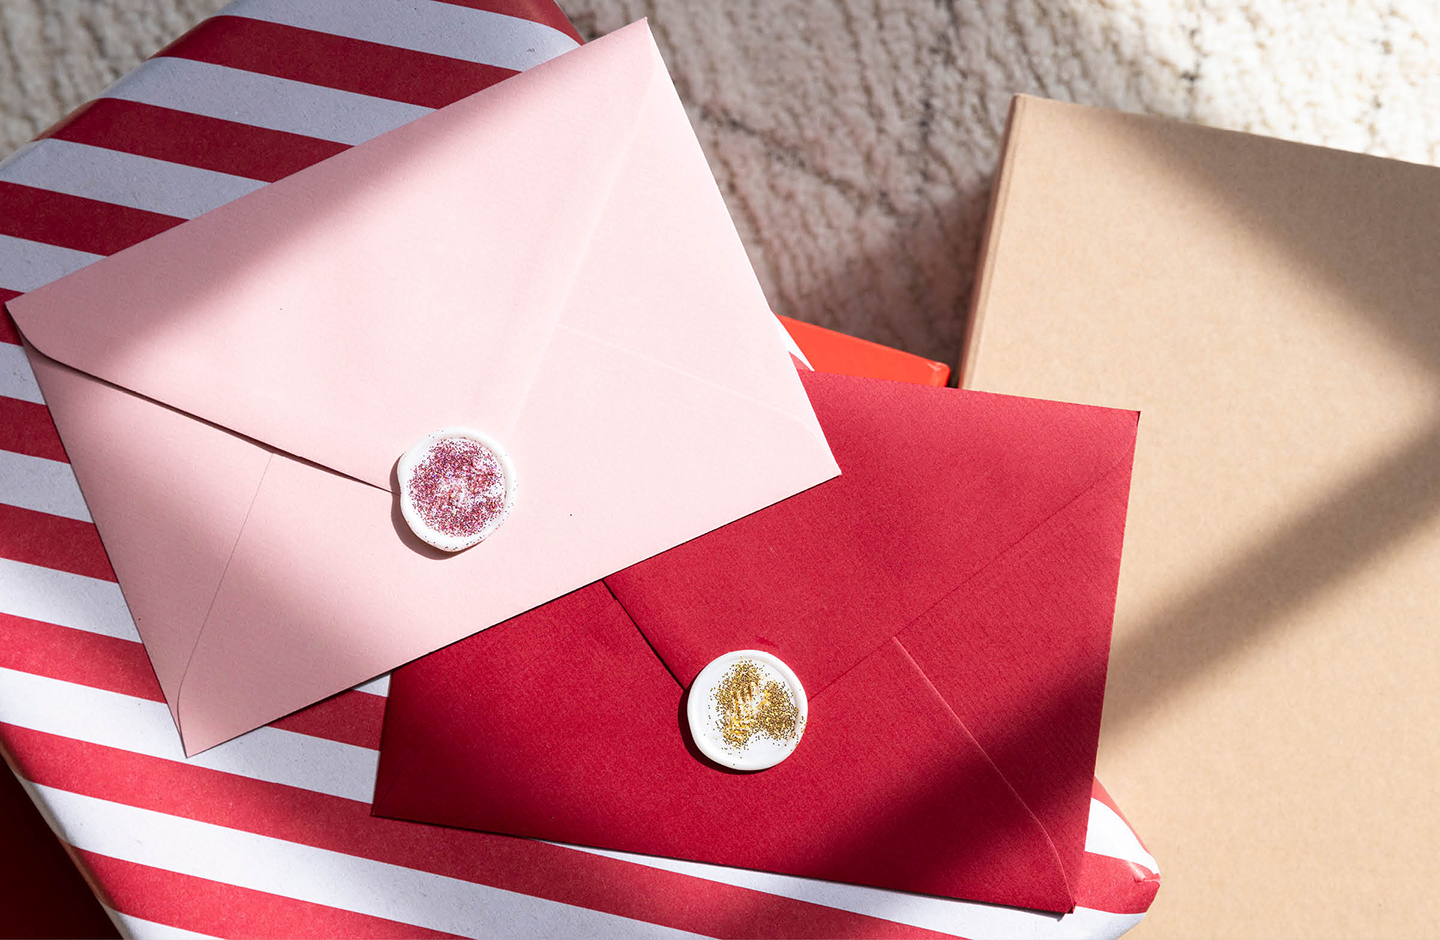 Briefumschlag in rosa und rot versiegelt mit einem glitzernden Wachssiegel.